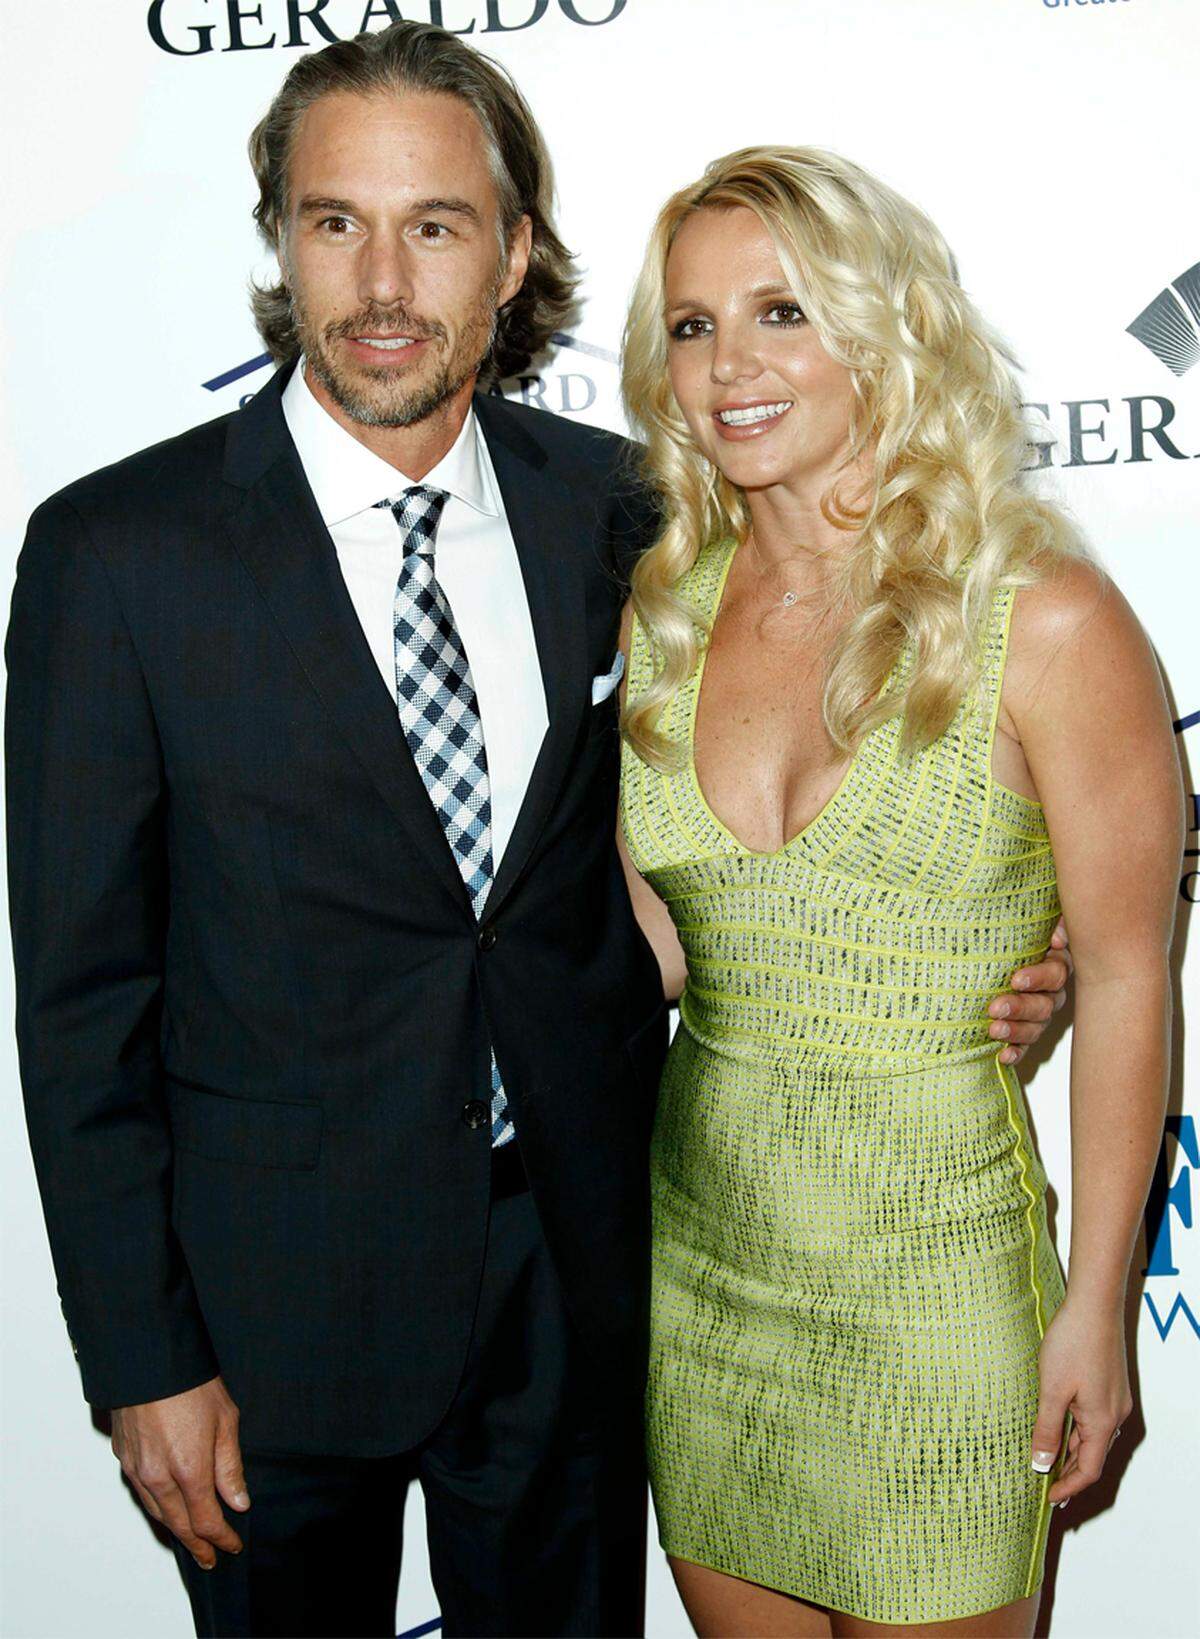 Britney Spears wirkt wieder recht stabil. Der Sorgerechtsstreit mit ihrem Ex-Mann Kevin Federline liegt in den letzten Zügen. Die Liebe zu ihrem neuen Freund Jason Trawick ist noch frisch. Was ihr jetzt noch fehlt, sei eine Hochzeit und ein Baby, heißt es auf einschlägigen Klatschportalen. Wer ist dagegen? Ihr Vater. Jamie Spears hat nach wie vor die Vormundschaft über seine Tochter. Für eine weitere Schwangerschaft sei sie noch zu labil, ist er überzeugt.